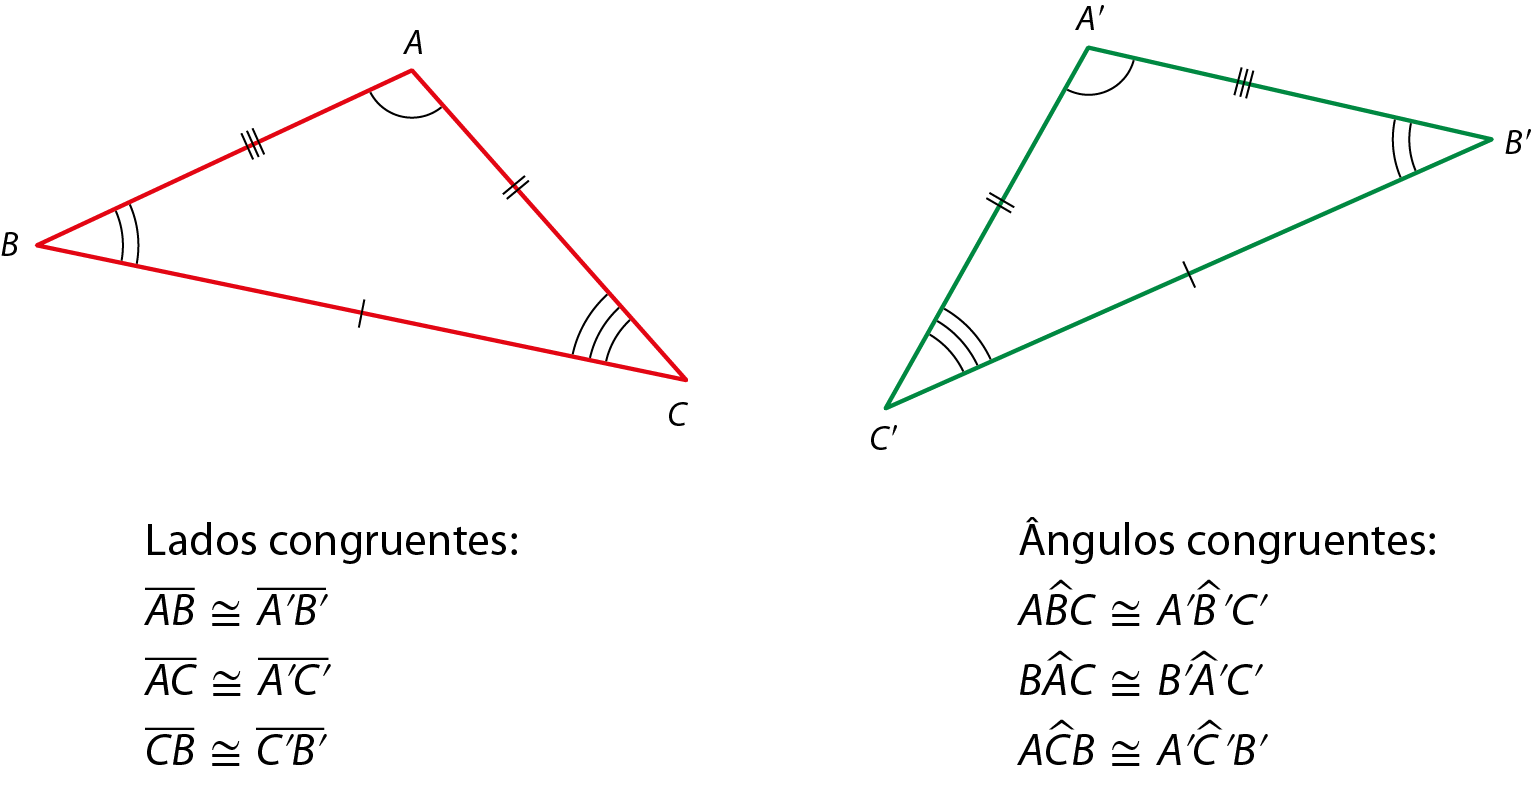 Ilustração. Dois triângulos um do lado do outro. 
Triângulo ABC com lados de medidas diferentes e ângulos de medidas diferentes. 
Triângulo A linha B linha C linha com lados de medidas diferentes e ângulos de medidas diferentes. 
Os triângulos são congruentes. 
Abaixo está escrito: 
Lados congruentes: segmento de reta AB é congruente ao segmento de reta A linha B linha; segmento de reta AC é congruente ao segmento de reta A linha C linha; segmento de reta CB é congruente ao segmento de reta C linha B linha.
Ângulos congruentes: ângulo ABC é congruente ao ângulo A linha B linha C linha; ângulo BAC é congruente ao ângulo B linha, A linha, C linha; ângulo ACB é congruente ao ângulo A linha, C linha, B linha.